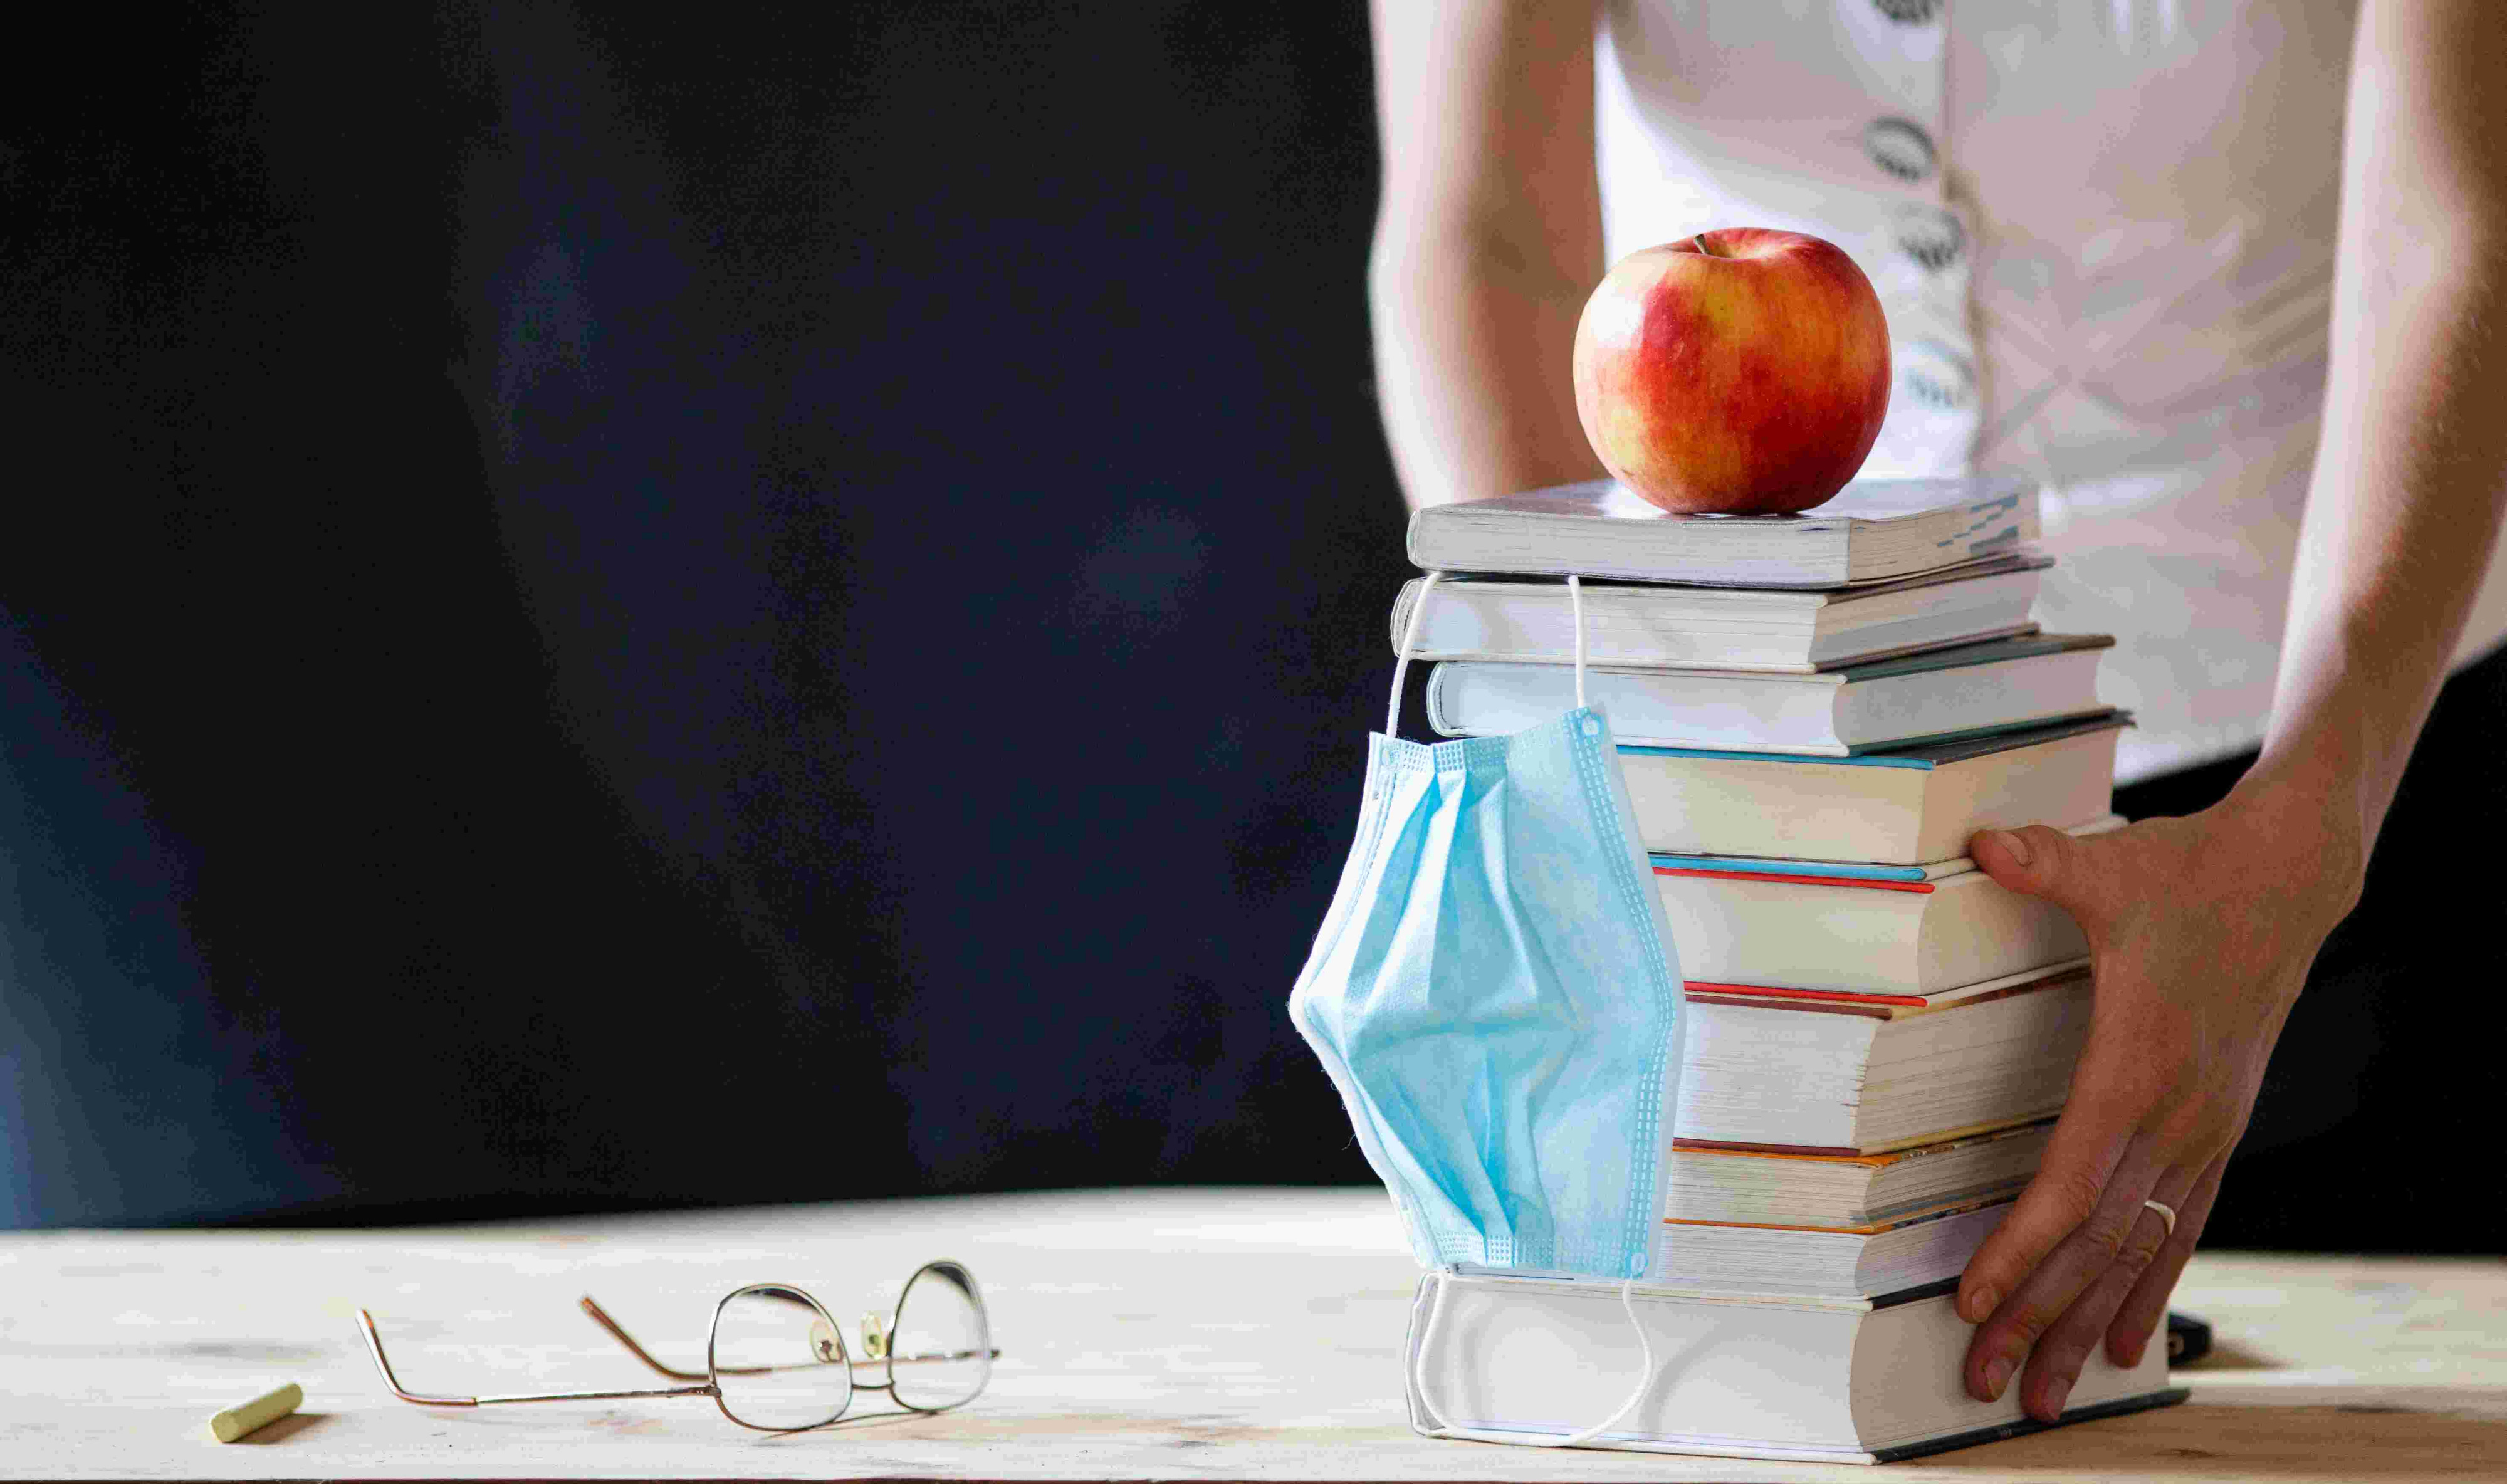 AUf einem Tisch liegen ein Bücherstapel mit Atemschutzmaske und einem Apfel, außerdem Papiere und eine Brille. Eine Person legt die Hände an den Bücherstapel